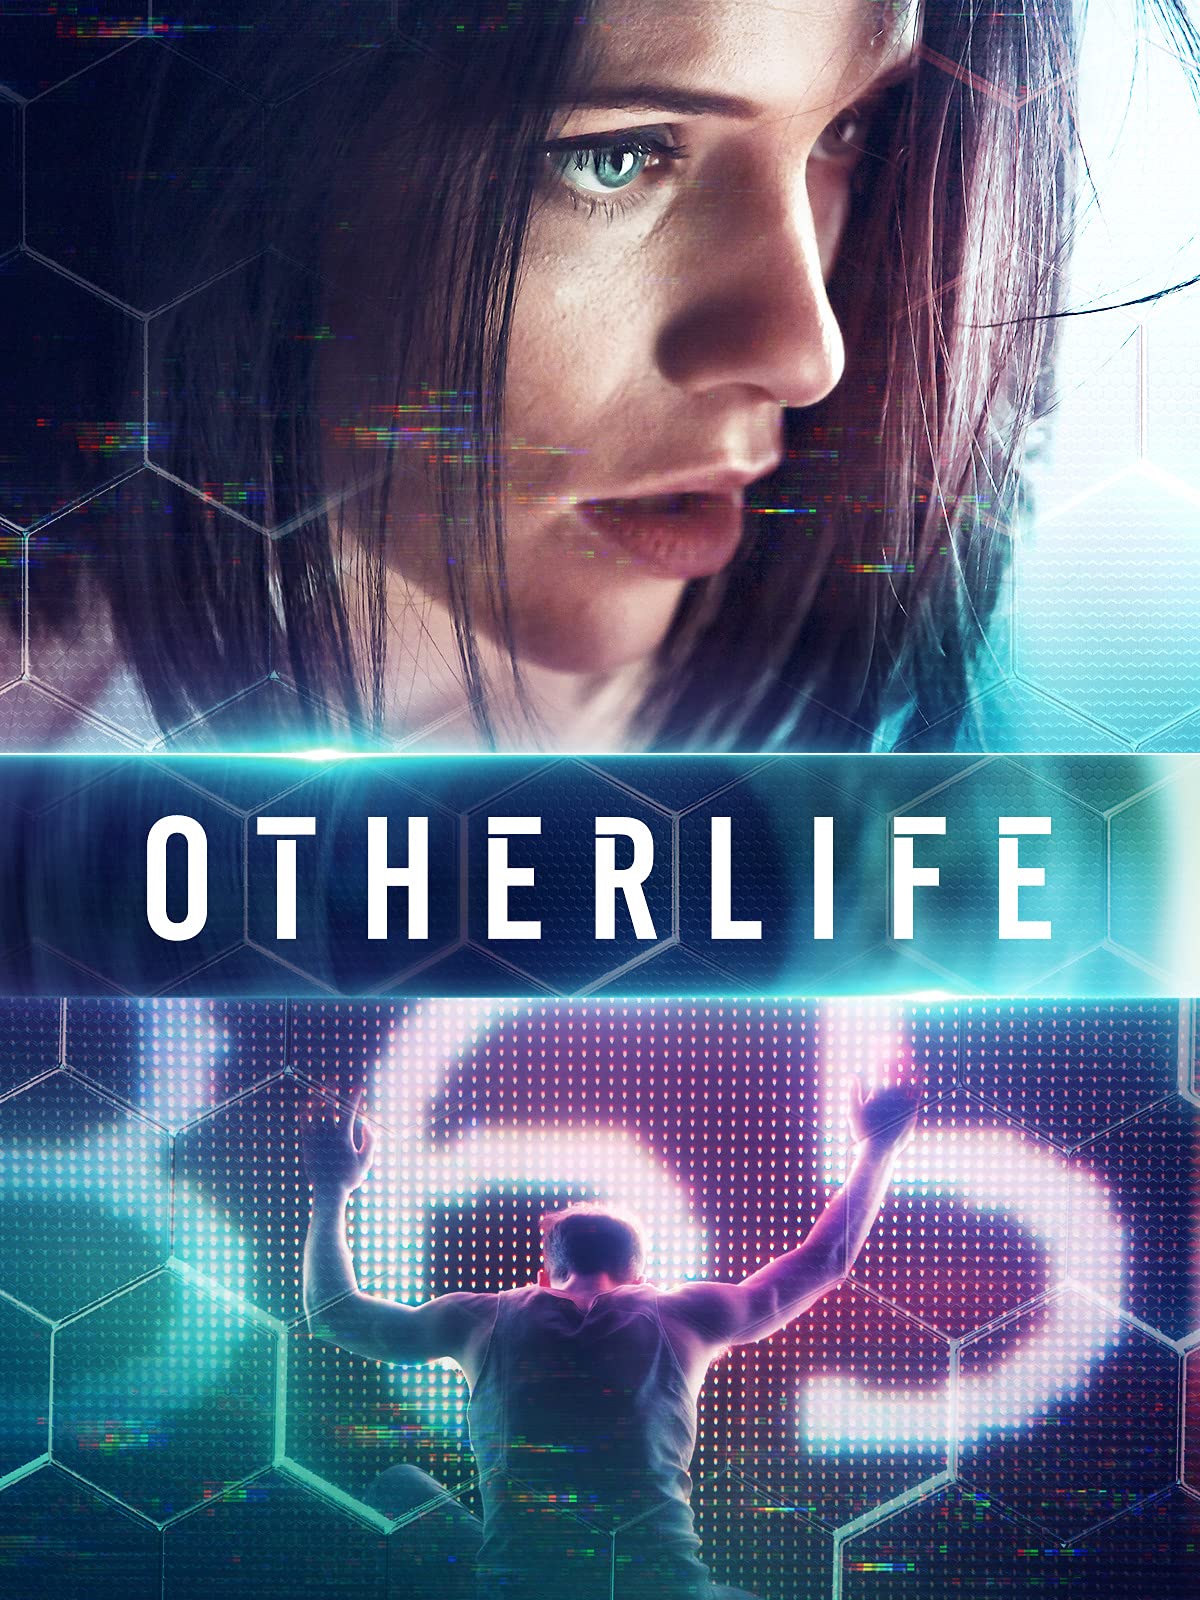 Cuộc Đời Khác – OtherLife (2017) Full HD Vietsub